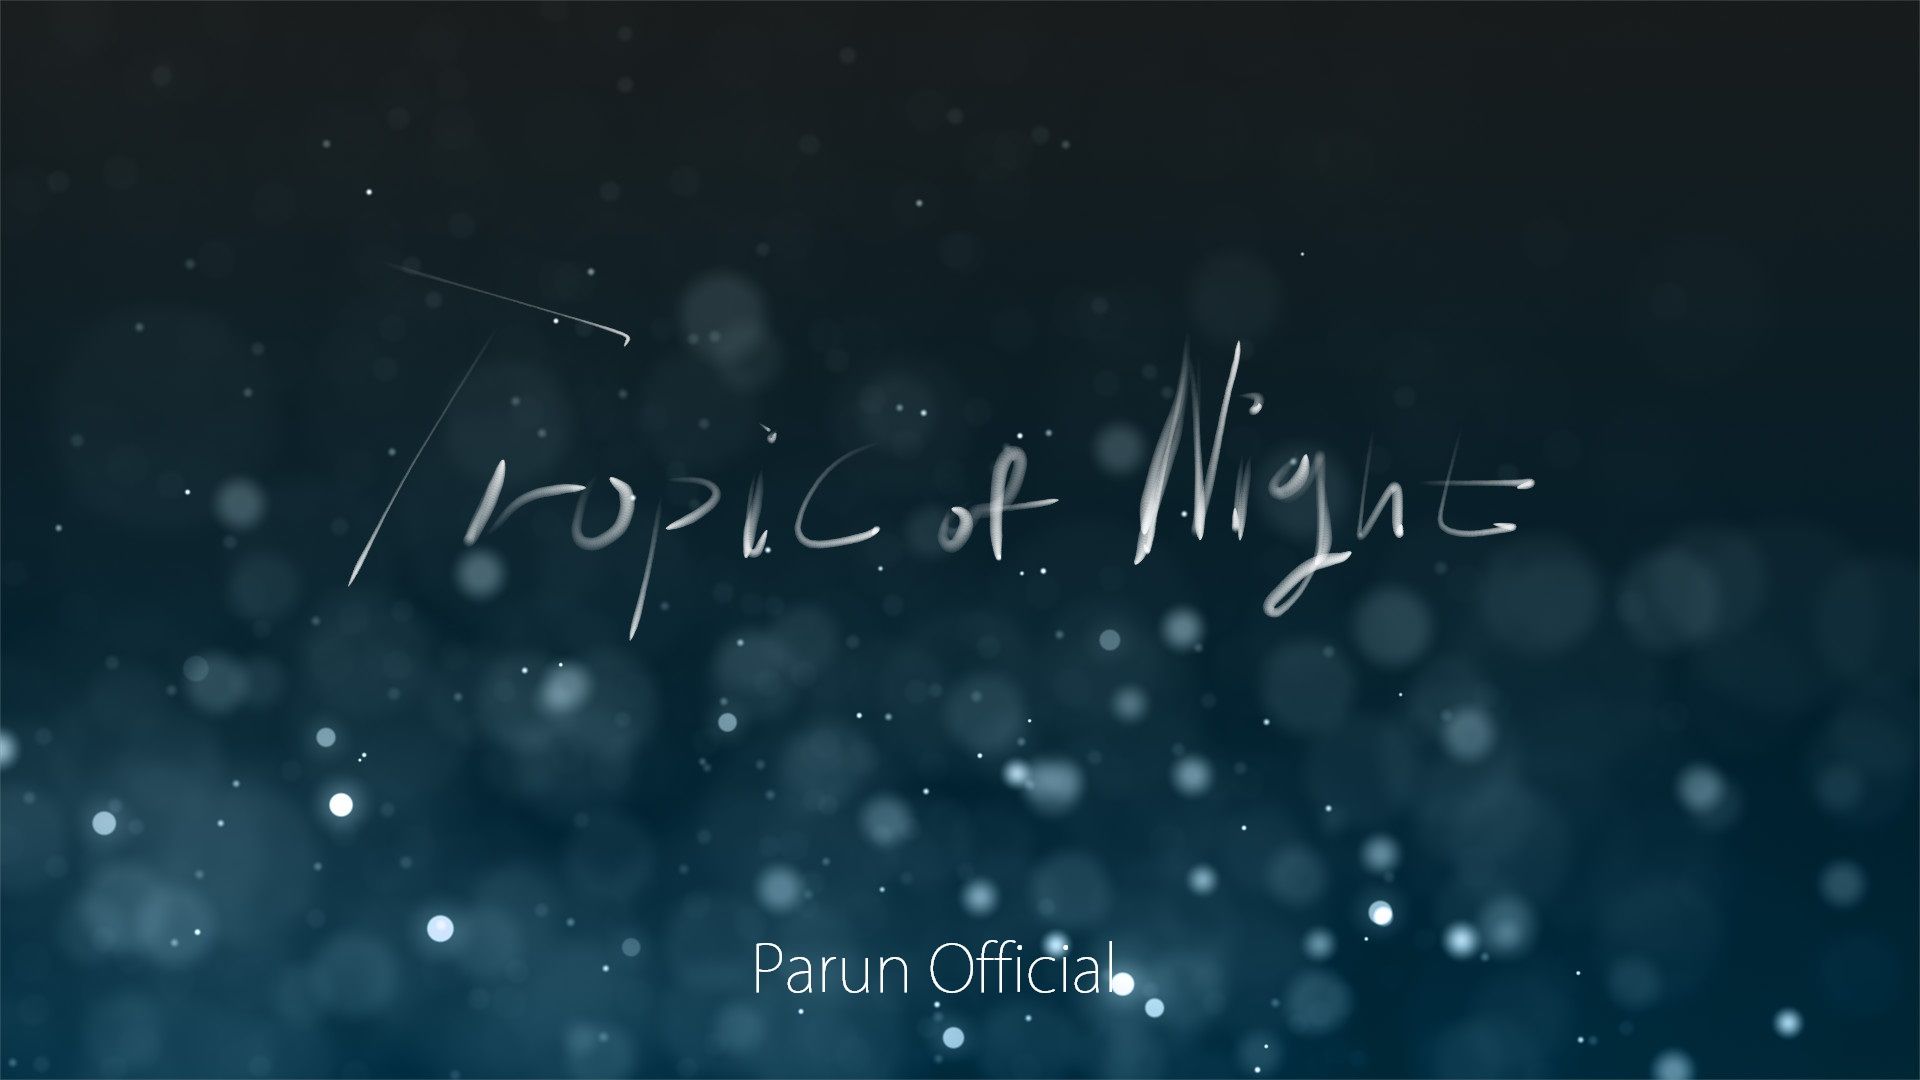 PARUN - Tropic of Night (클럽,피아노,비트,비장,힙합)